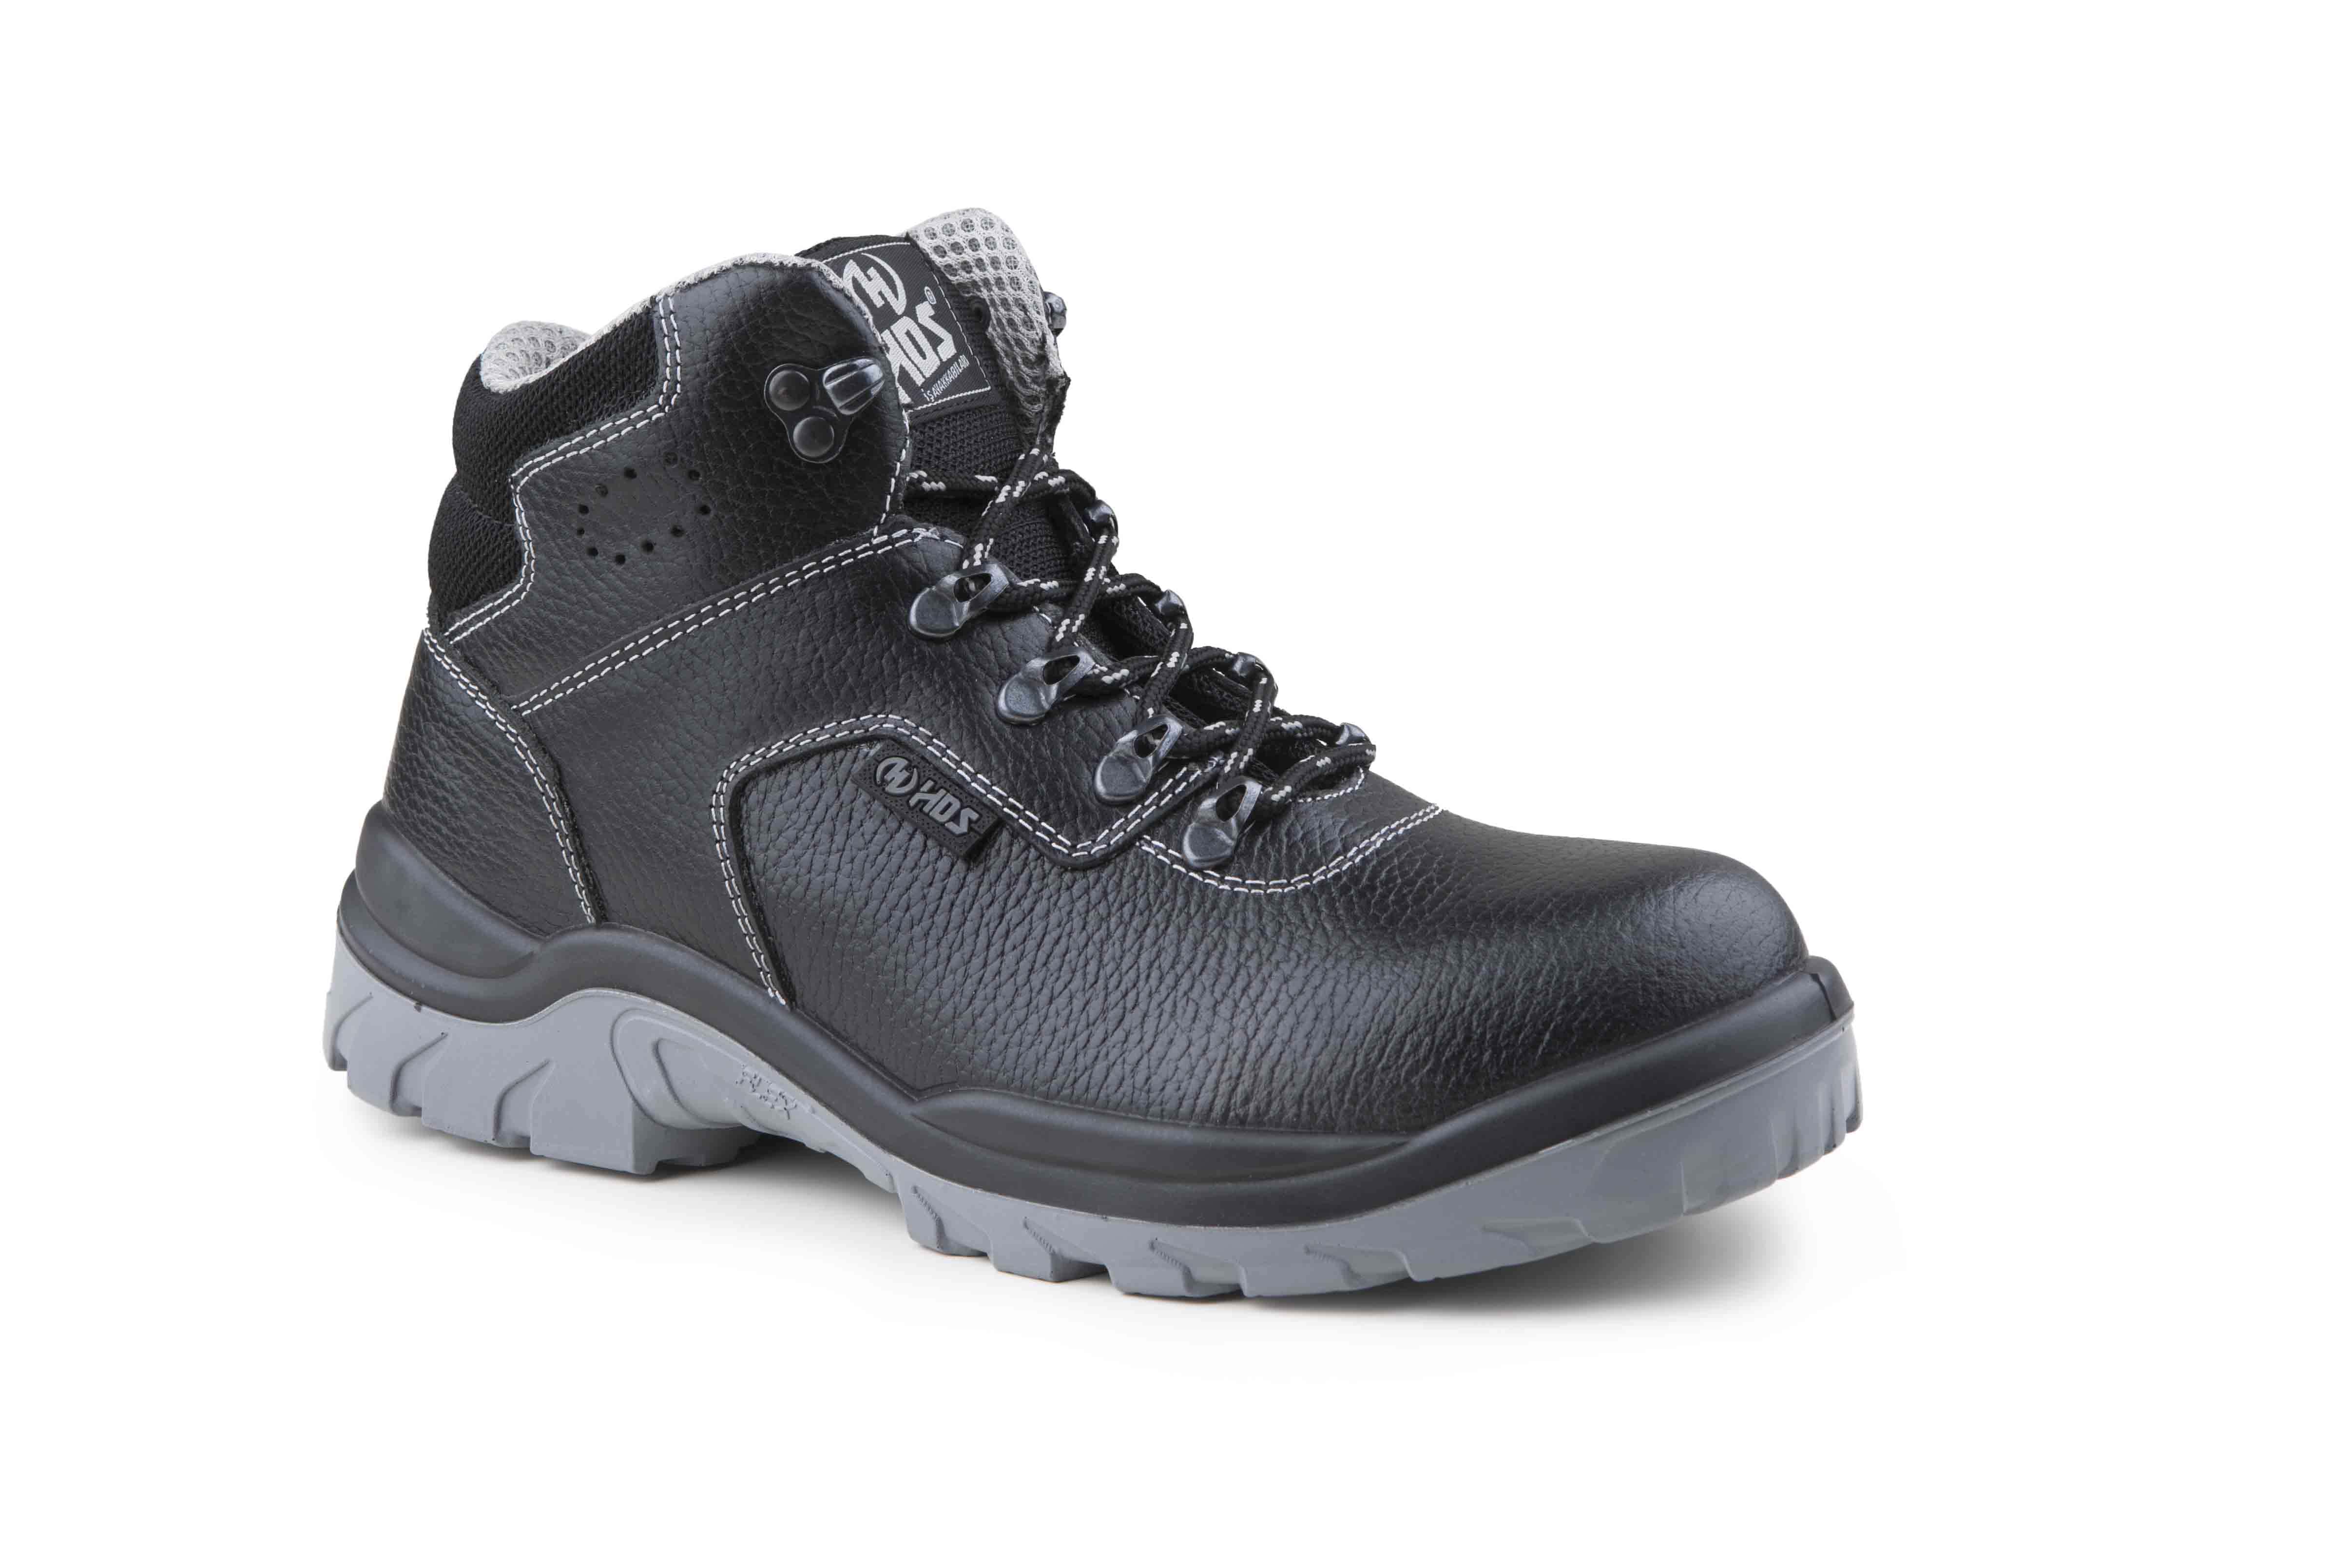 HDS İş Güvenlik Ayakkabıları, Fx 500L Modeli